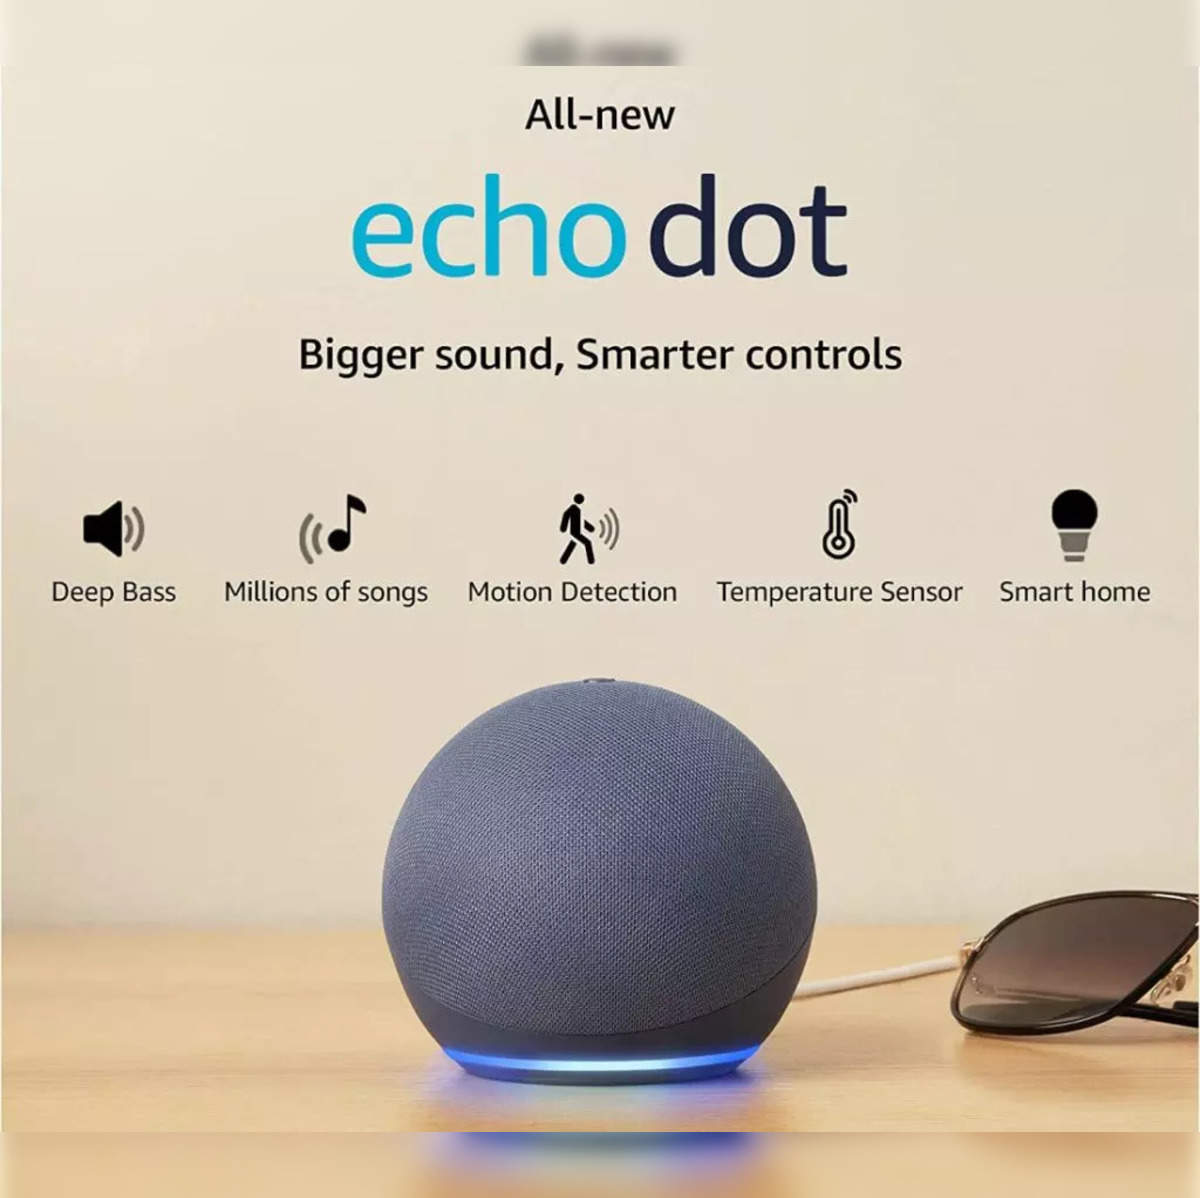 unveils next-gen Echo devices